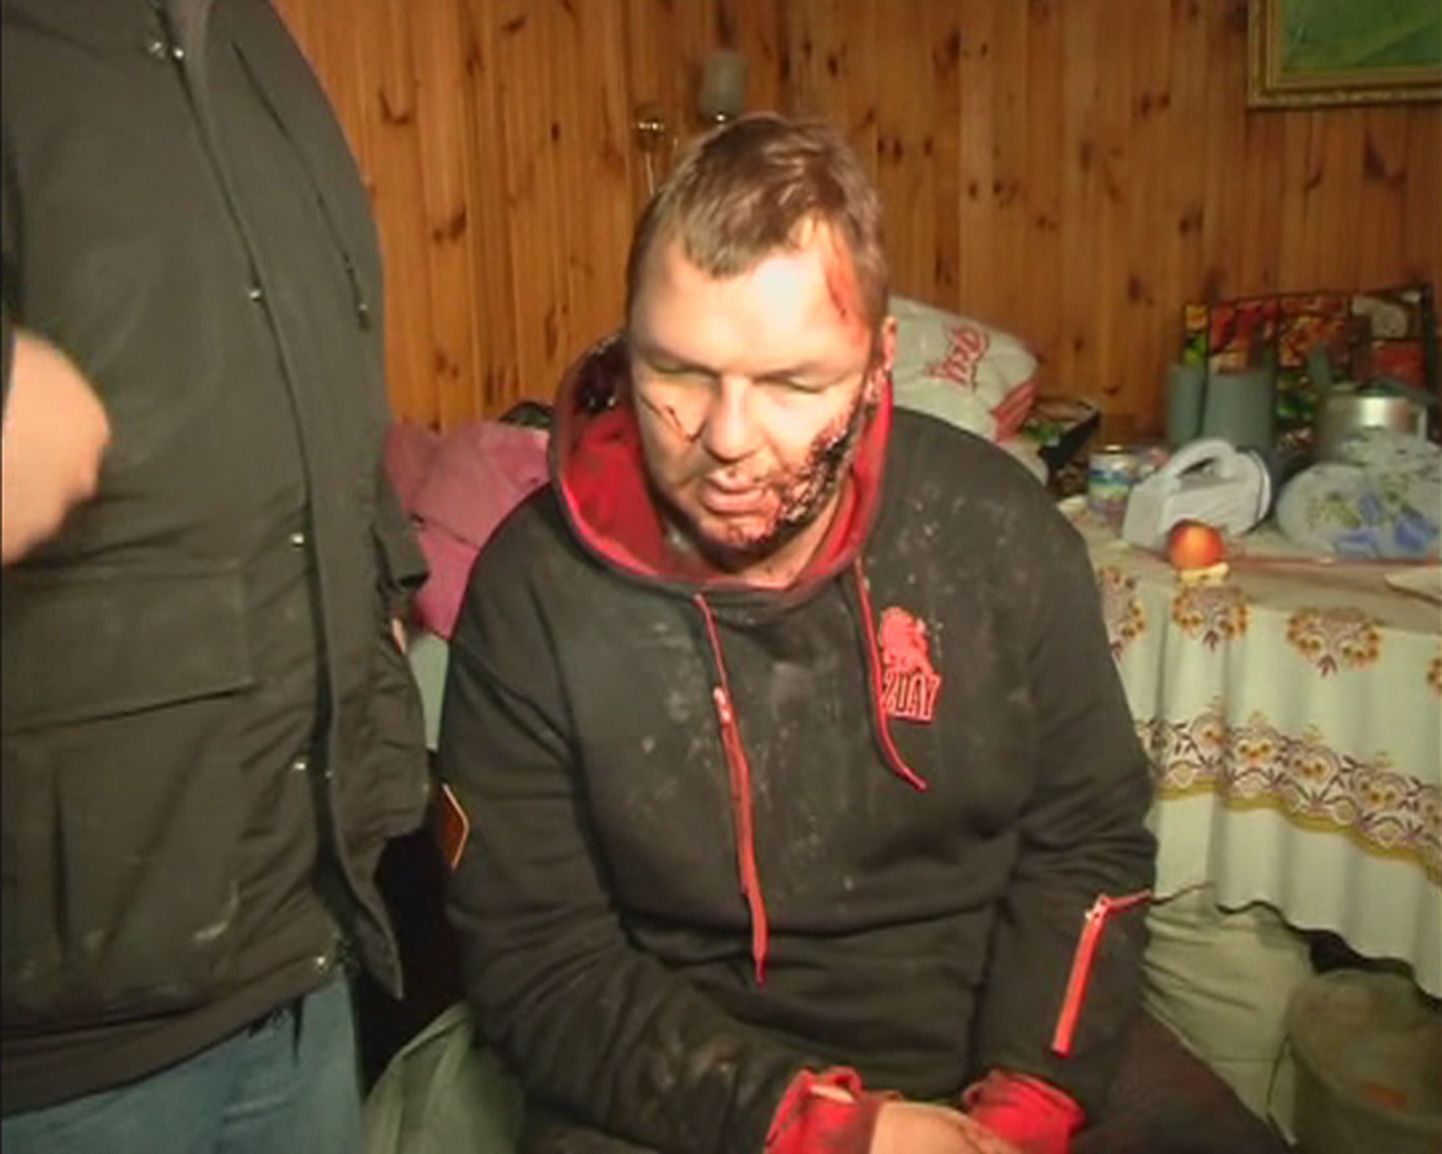 Tundmatute vene aktsendiga kõnelnud meeste käes kaheksa päeva röövitud olnud aktivist Dmitro Bulatov.